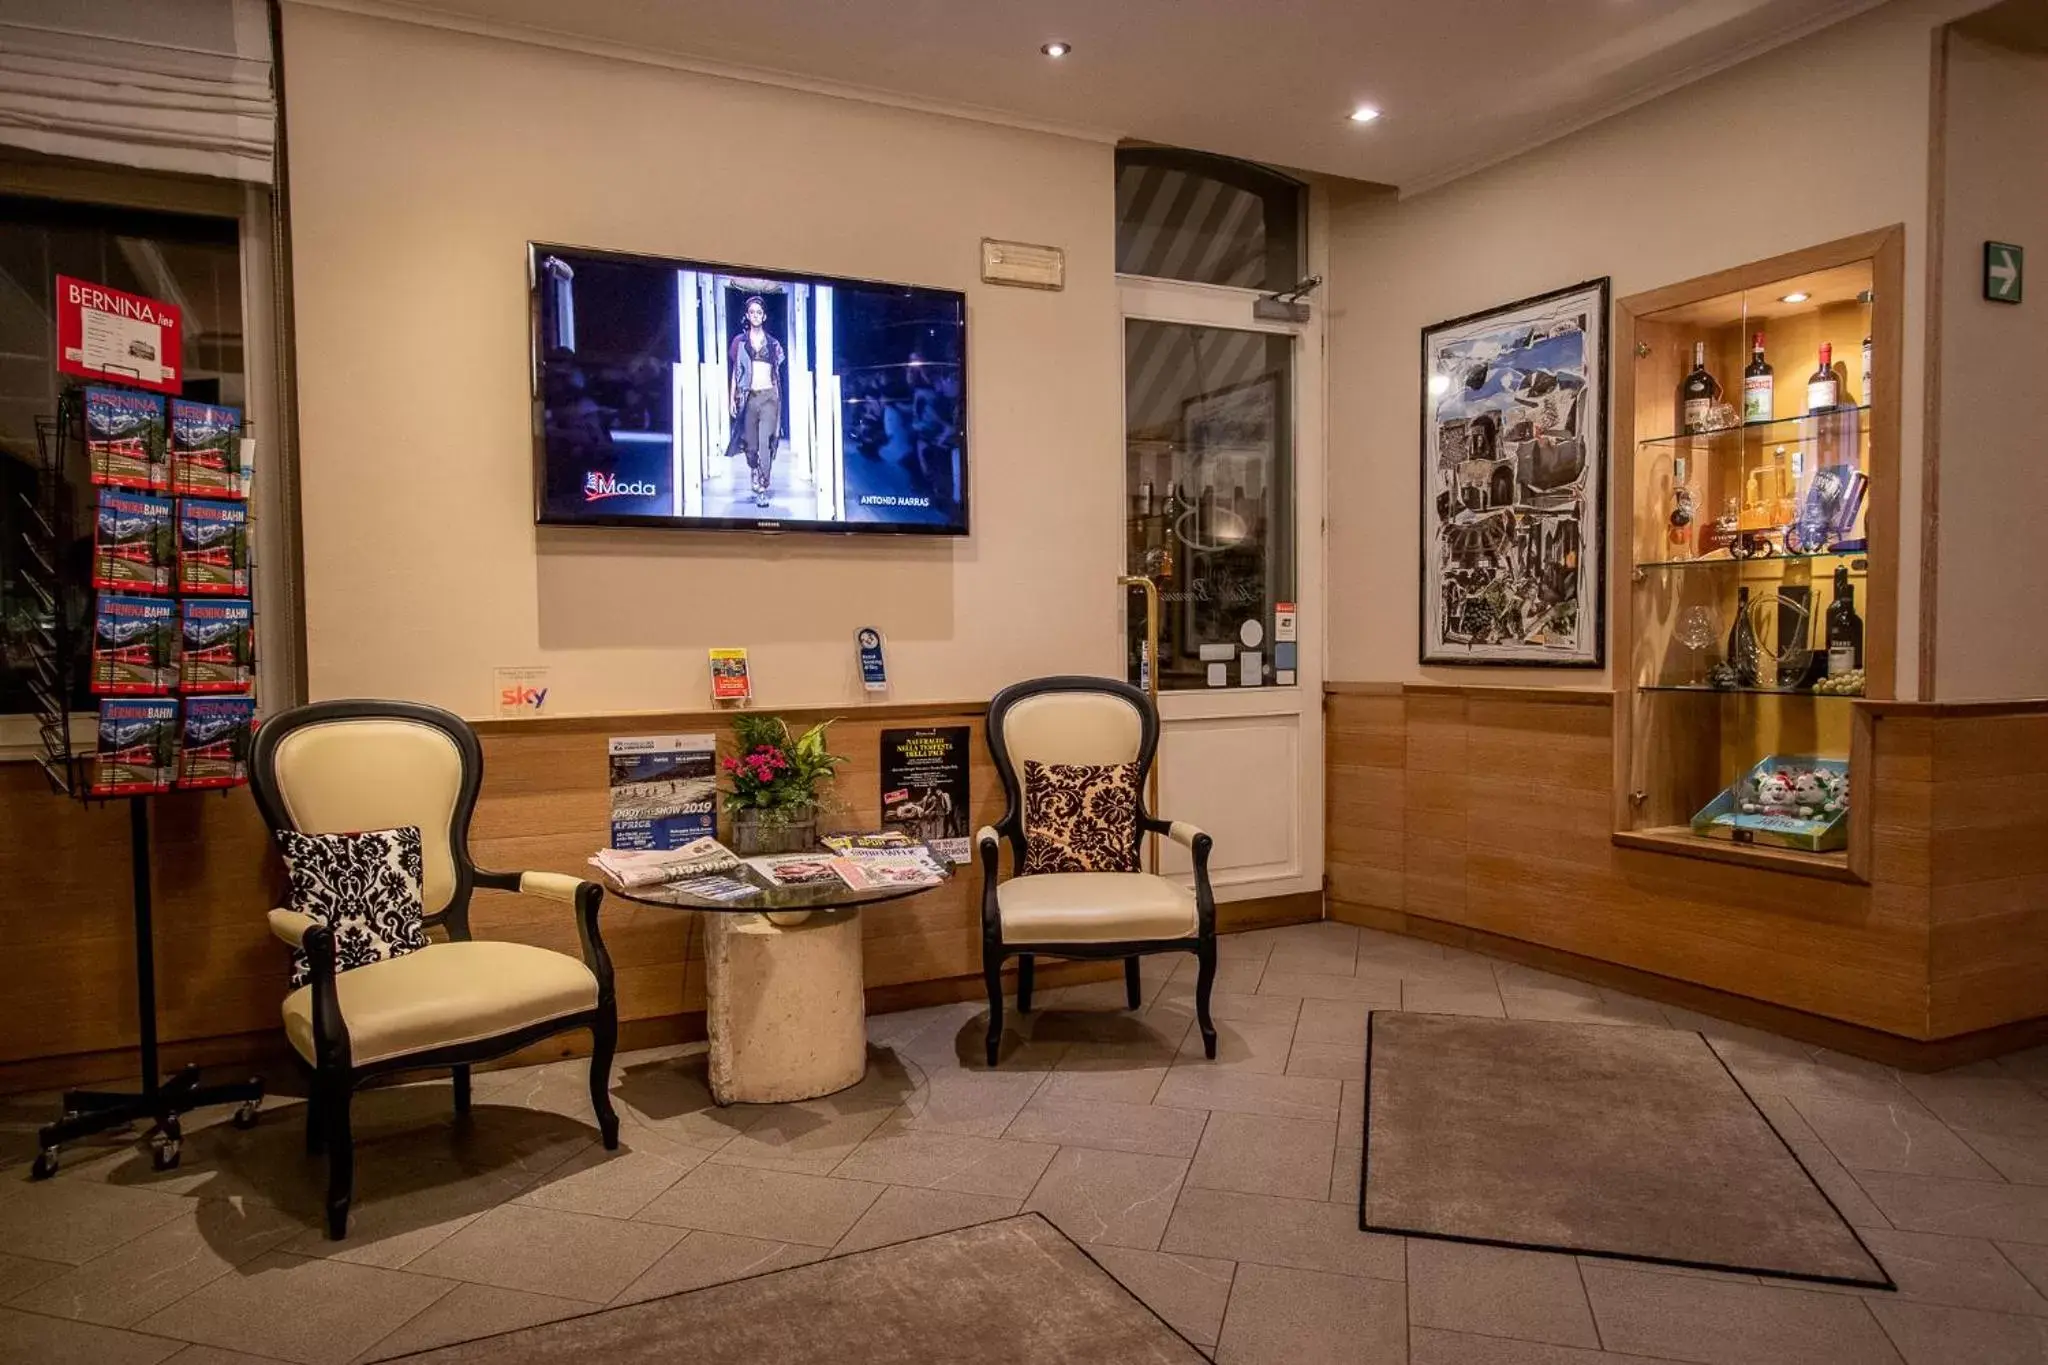 Lobby or reception, Lobby/Reception in Hotel Bernina